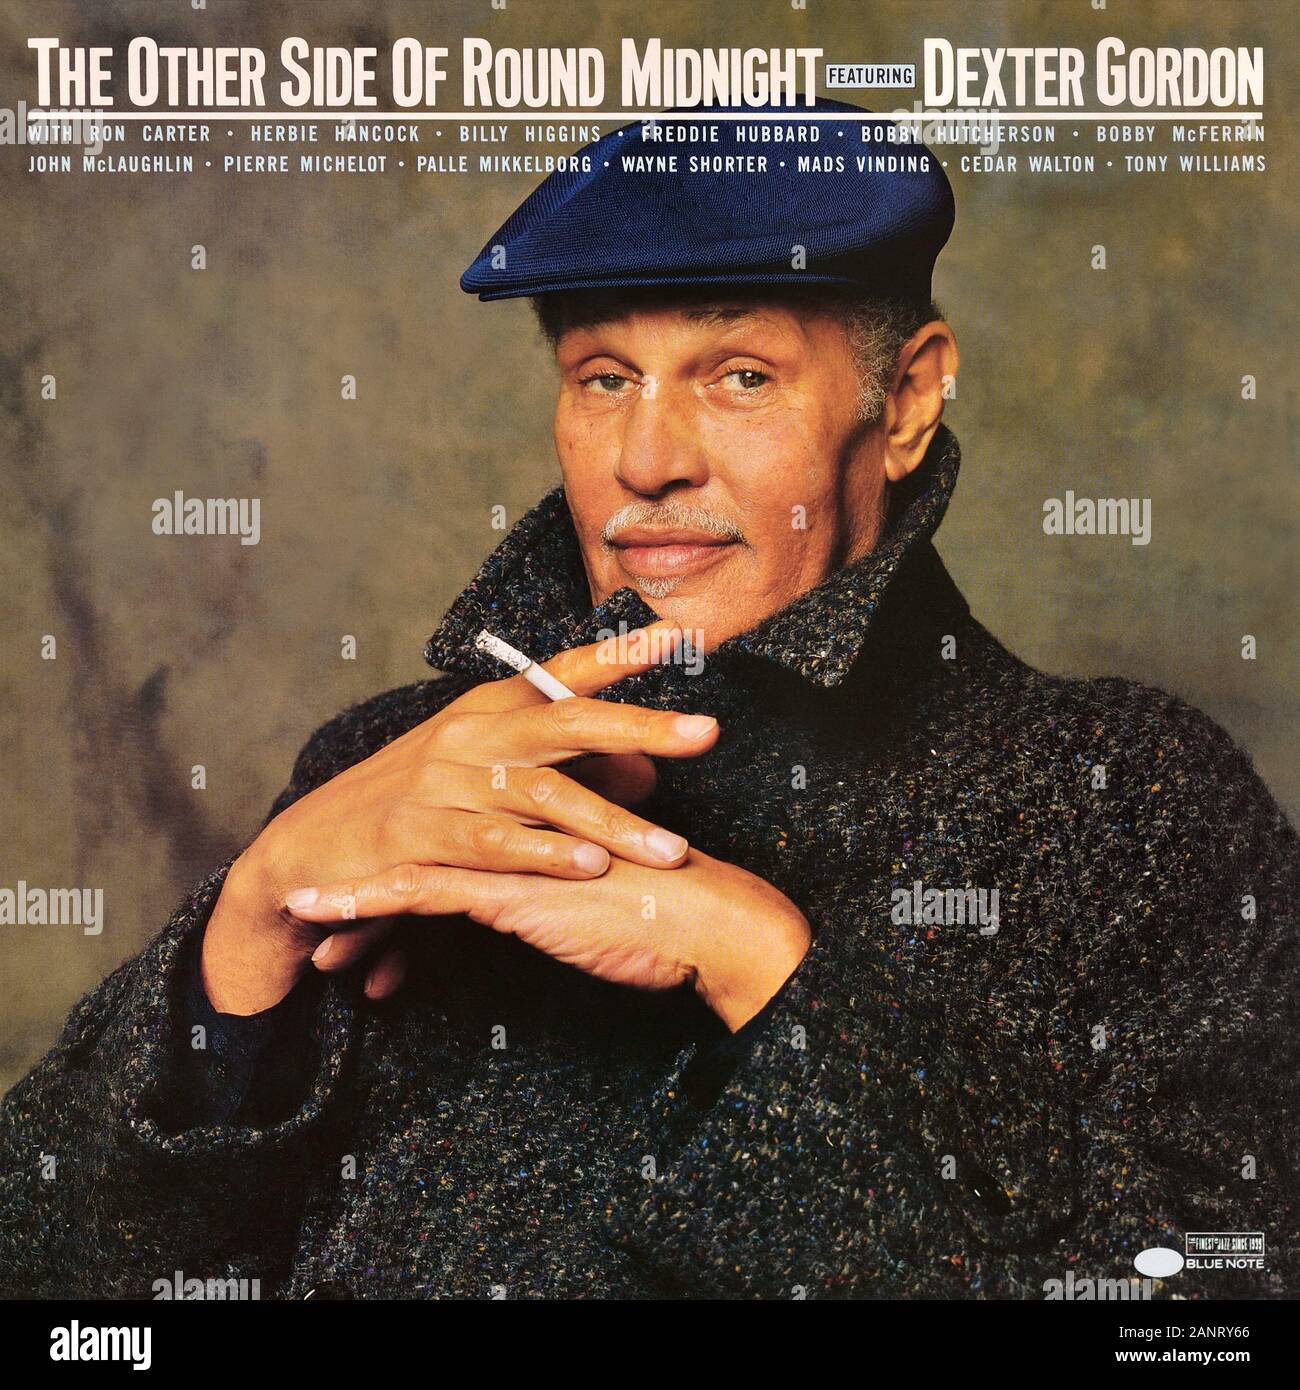 Dexter Gordon - copertina originale dell'album in vinile - l'altro lato del Round Midnight - 1986 Foto Stock